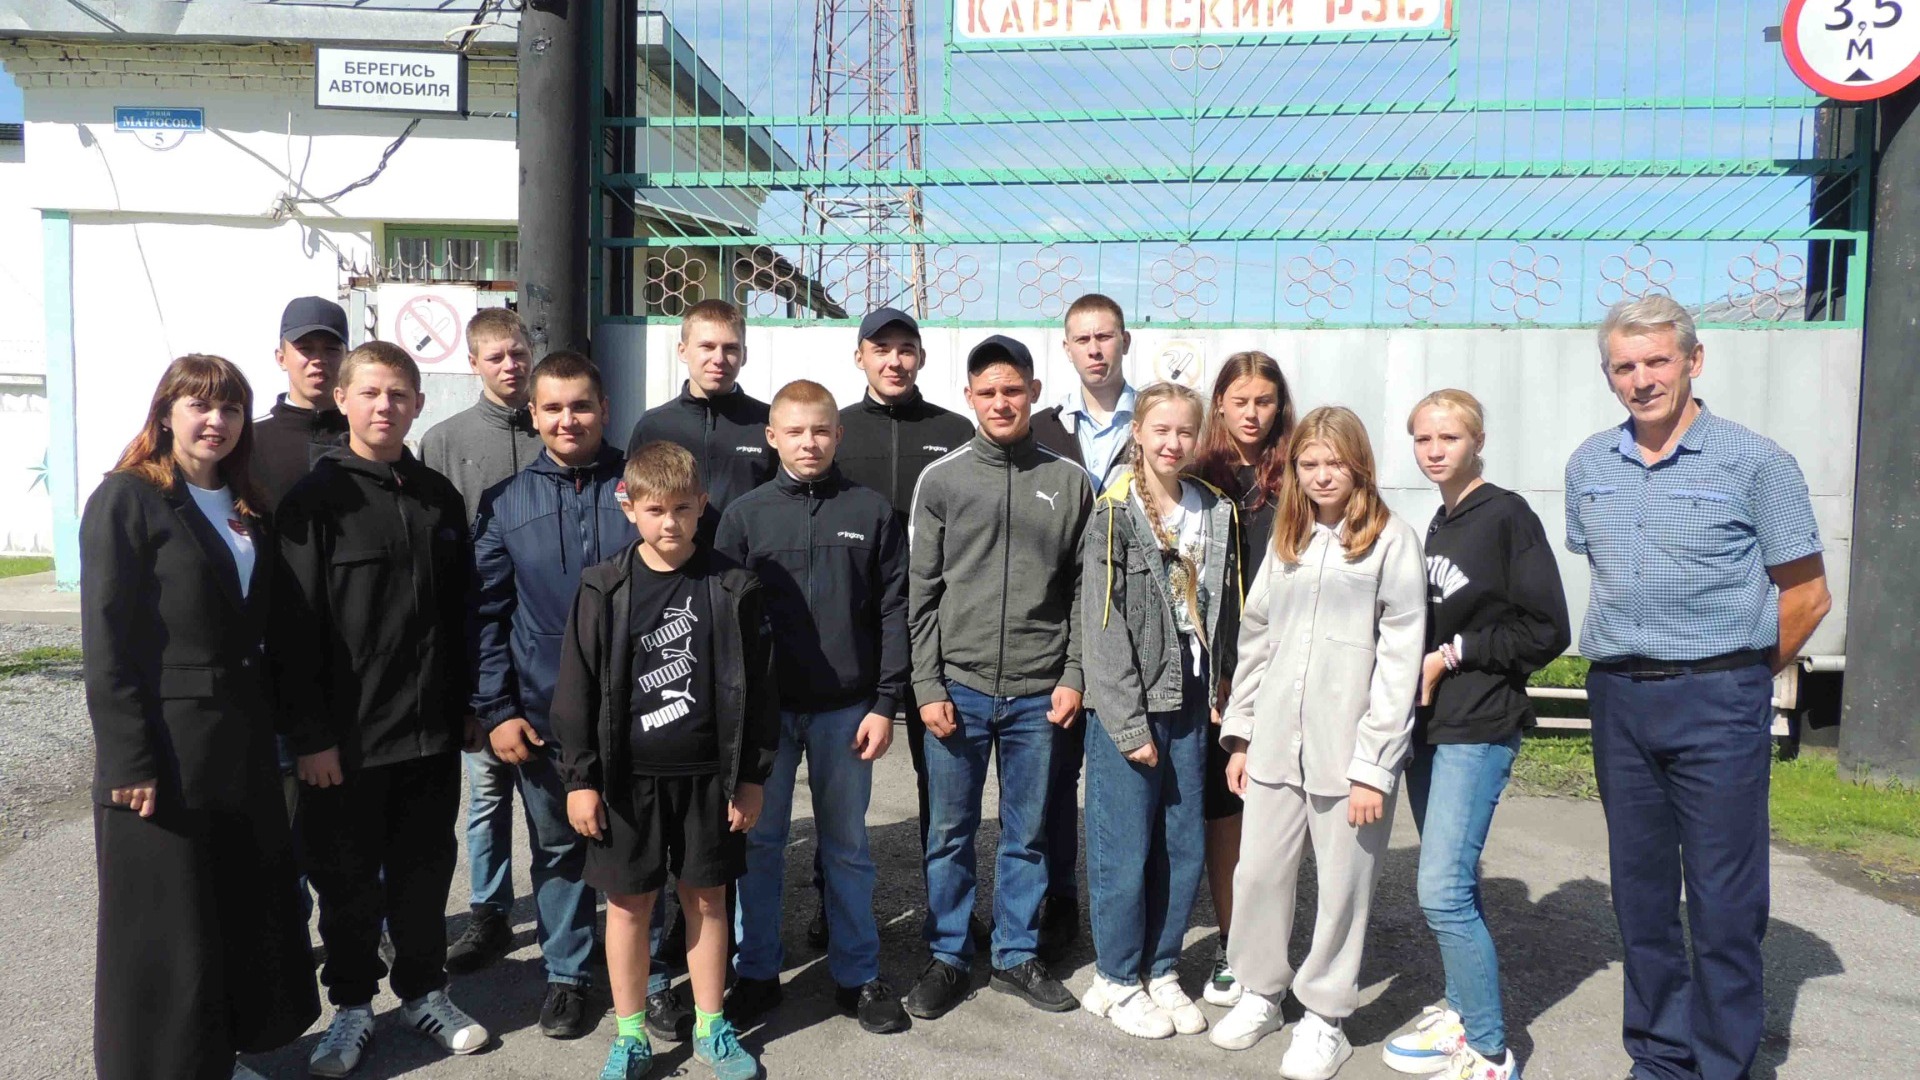 Познавательные экскурсии для детей и взрослых проводит АО "РЭС" в Новосибирске.